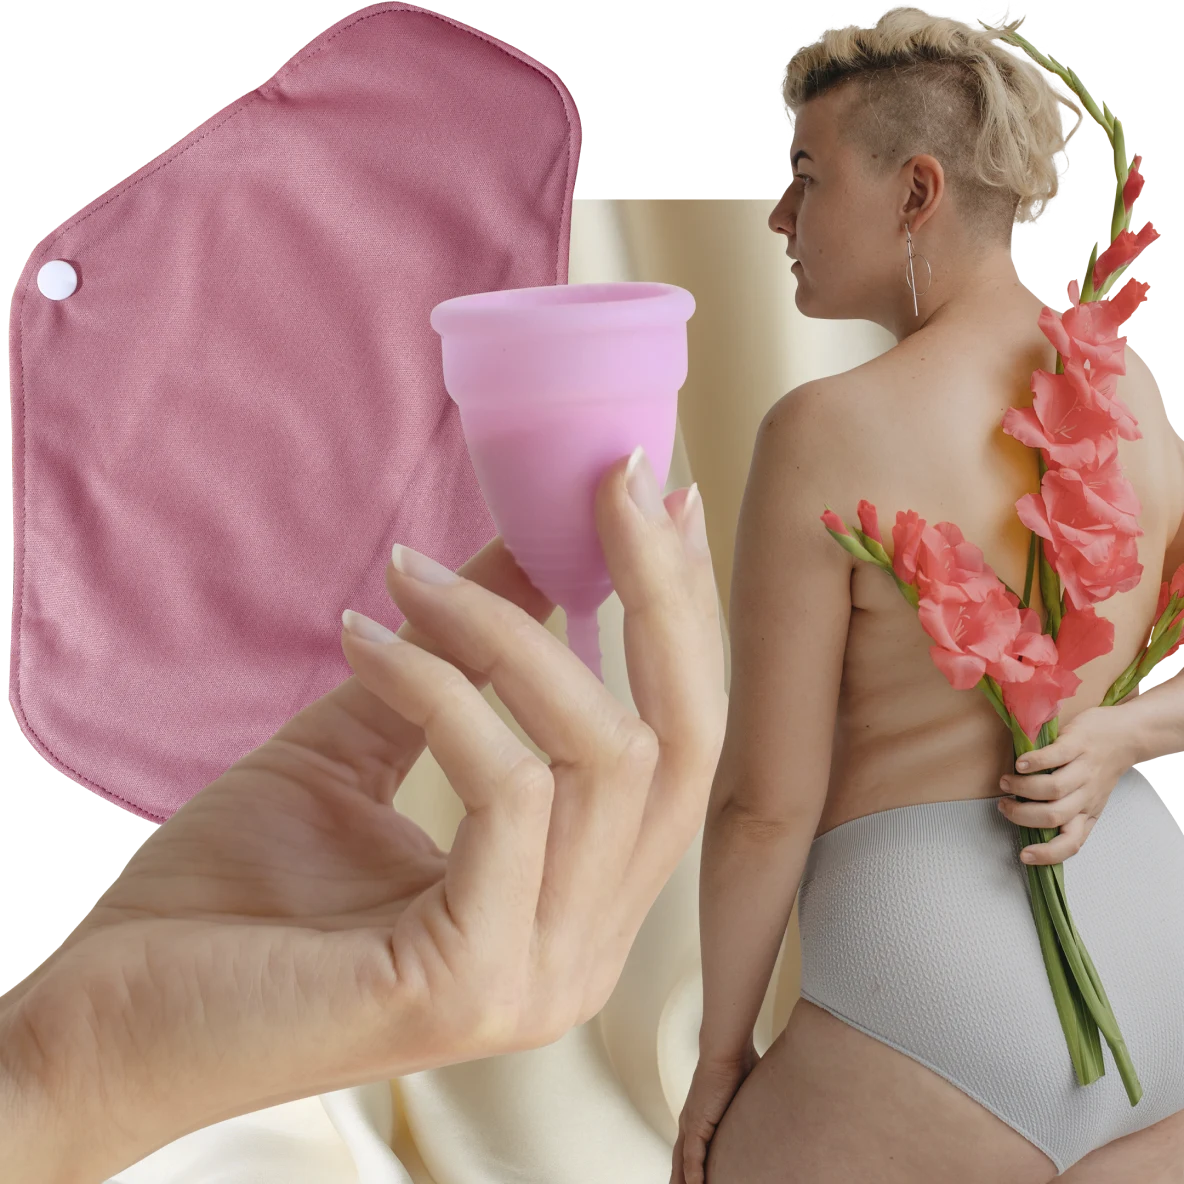 ピンクの月経カップを持った白い肌の手。画像左側にピンクの布ナプキン。画像右側には、後ろ手にピンクの花を持った金髪のショートヘアの白人女性。